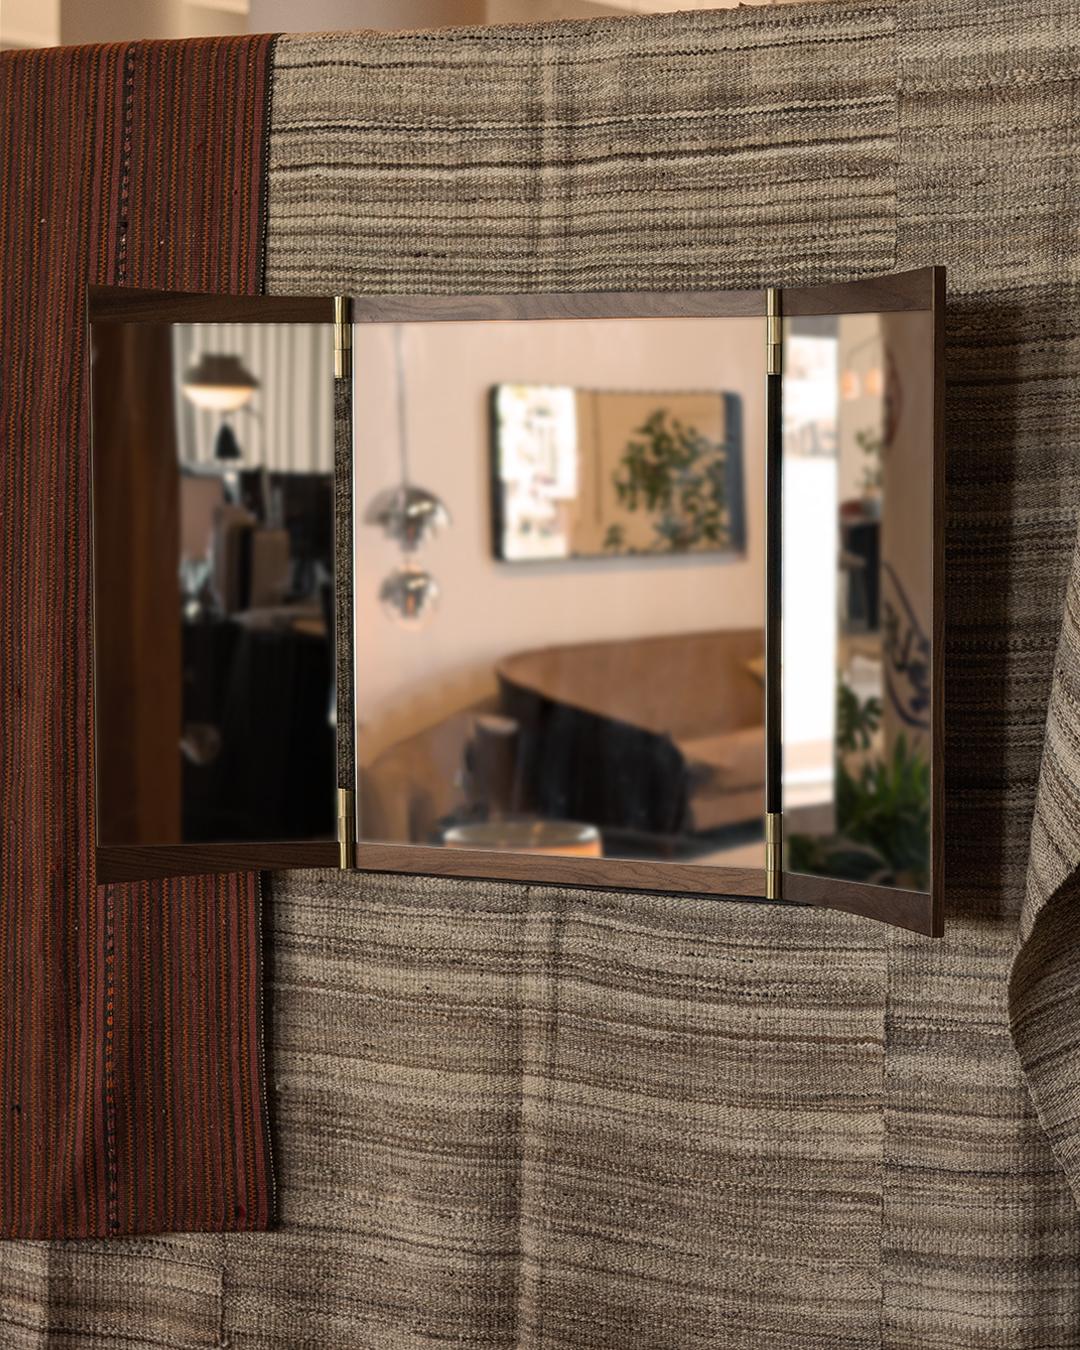 Miroir de courtoisie à trois panneaux pour Gubi.

Cette nouvelle collection de miroirs muraux réinvente ingénieusement le miroir de courtoisie pour les intérieurs contemporains. Exécuté en noyer et en laiton, le miroir Vanity incarne la capacité de